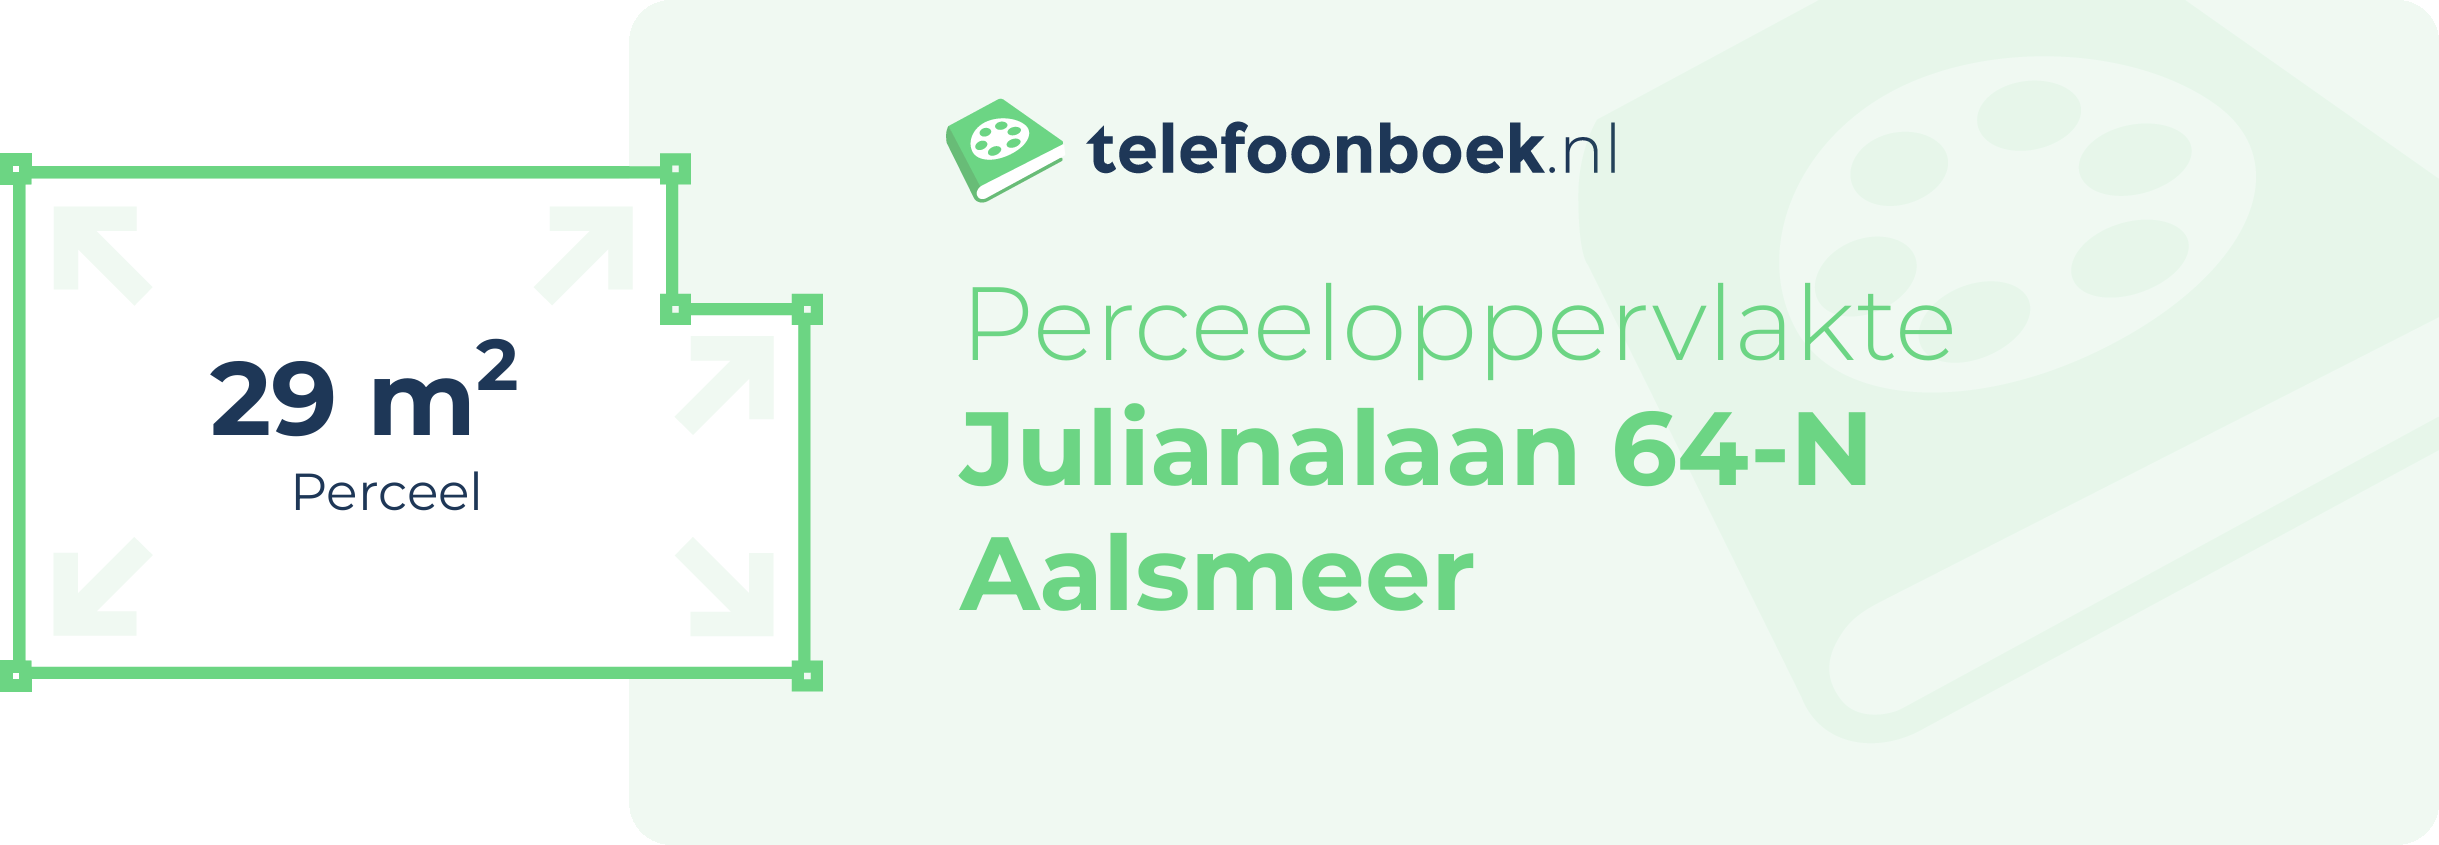 Perceeloppervlakte Julianalaan 64-N Aalsmeer